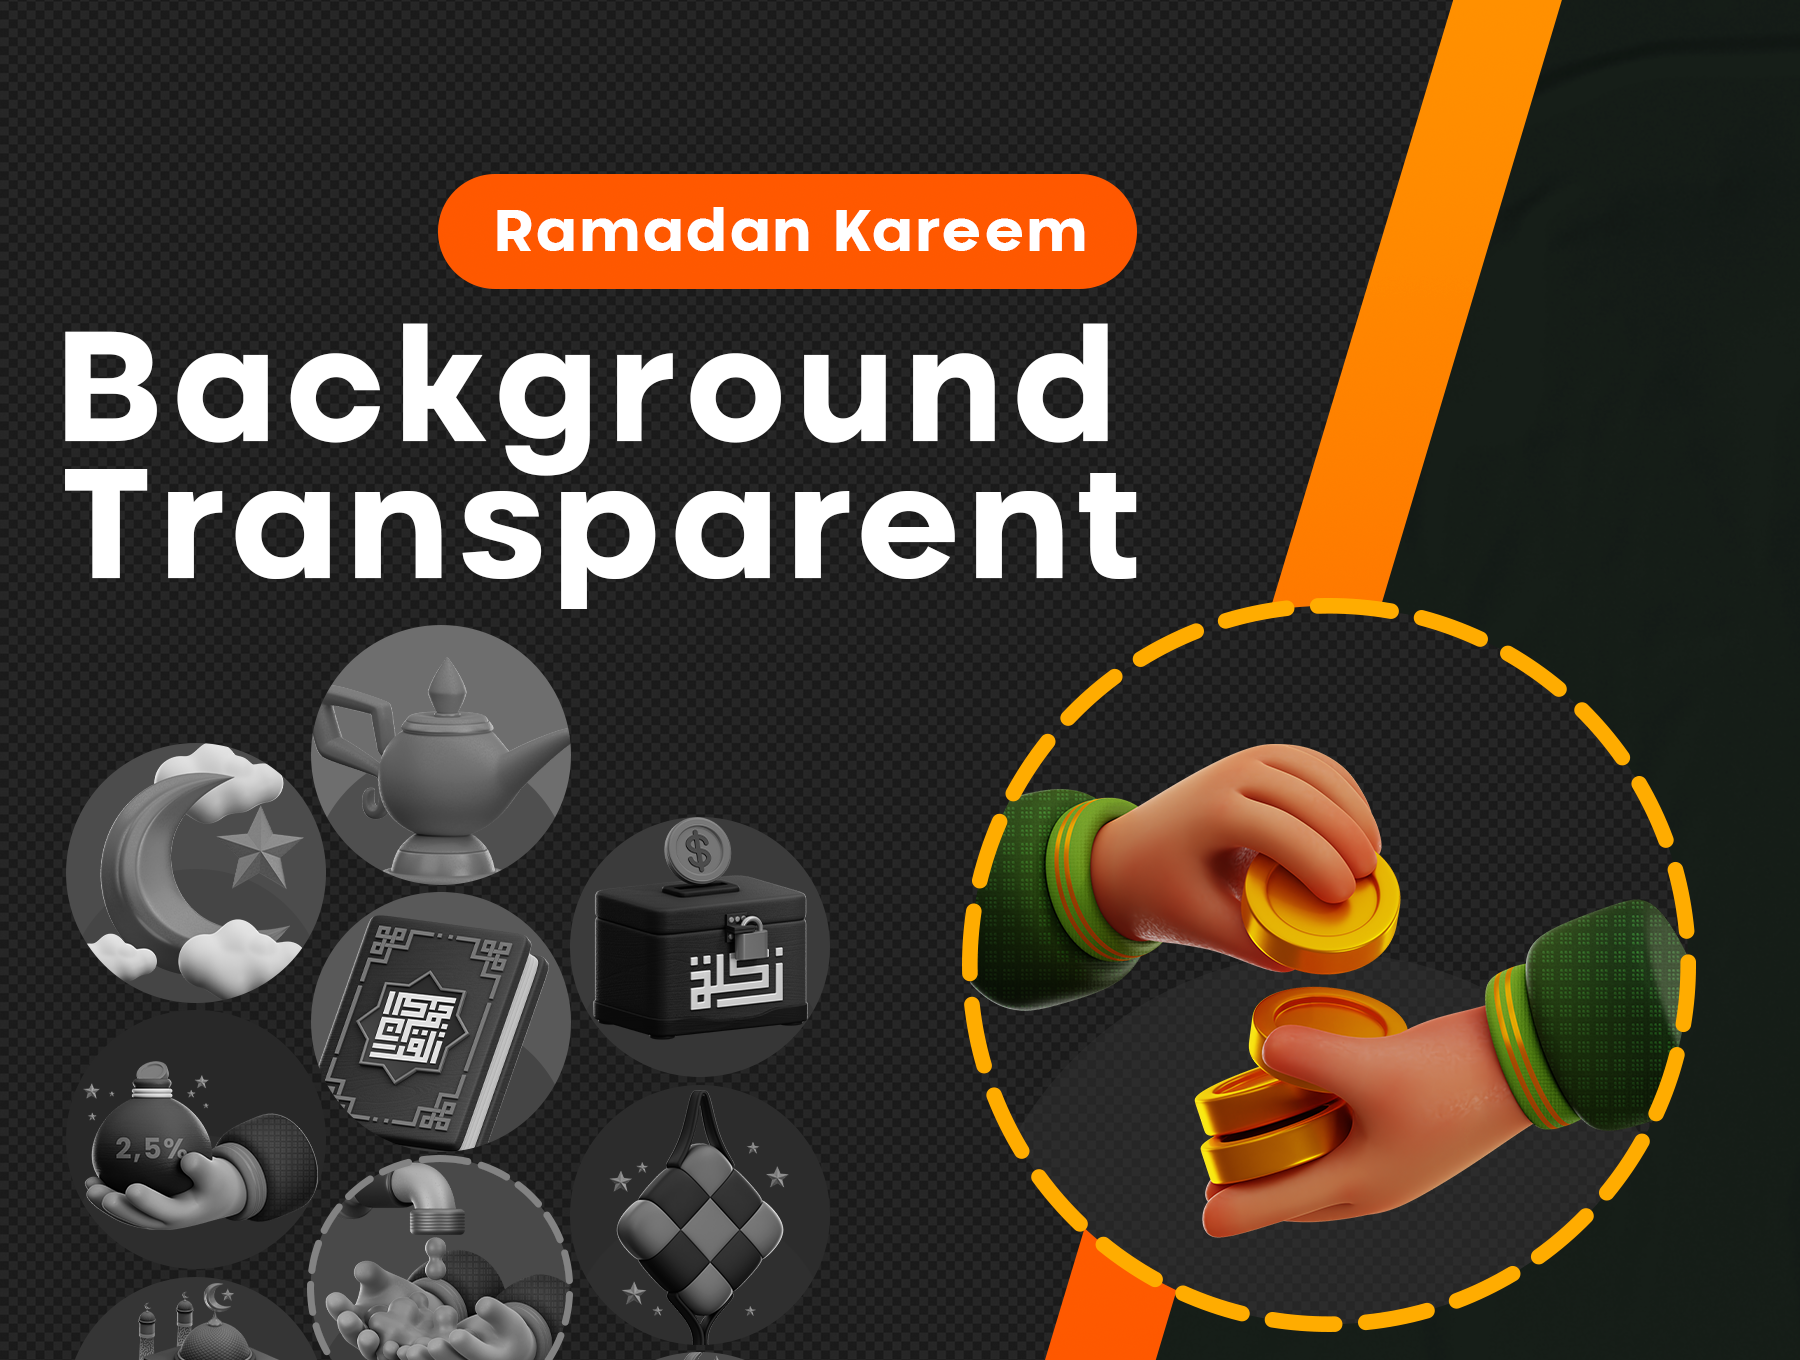 斋月Kareem 3D图标套装 Ramadan Kareem 3D Iconset obj, png, blender, gltf格式-3D/图标-到位啦UI